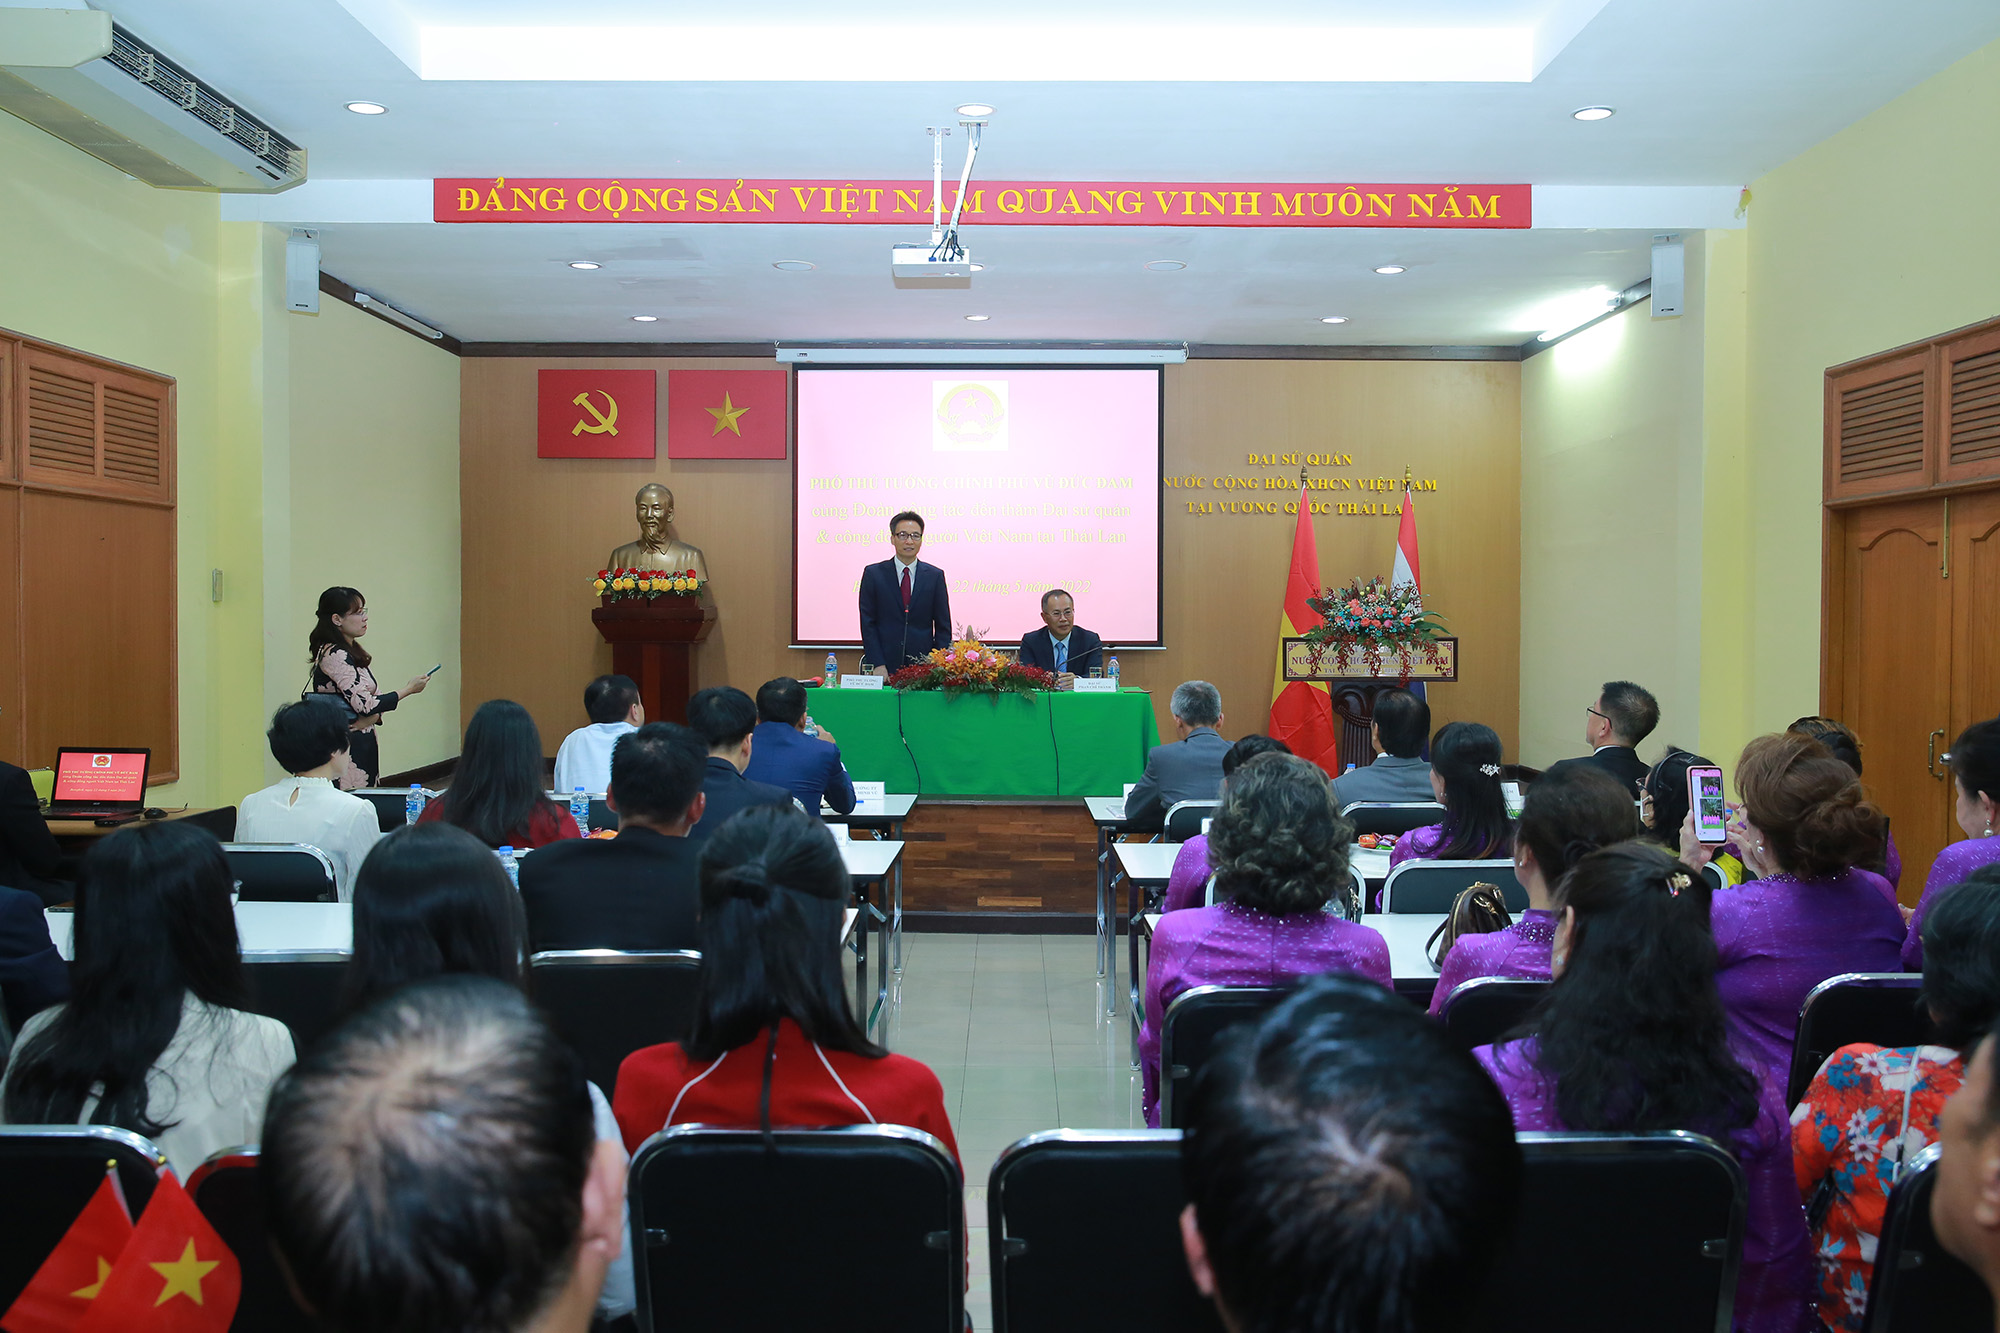 Phó Thủ tướng Vũ Đức Đam gặp gỡ cộng đồng người Việt tại Thái Lan - Ảnh 3.